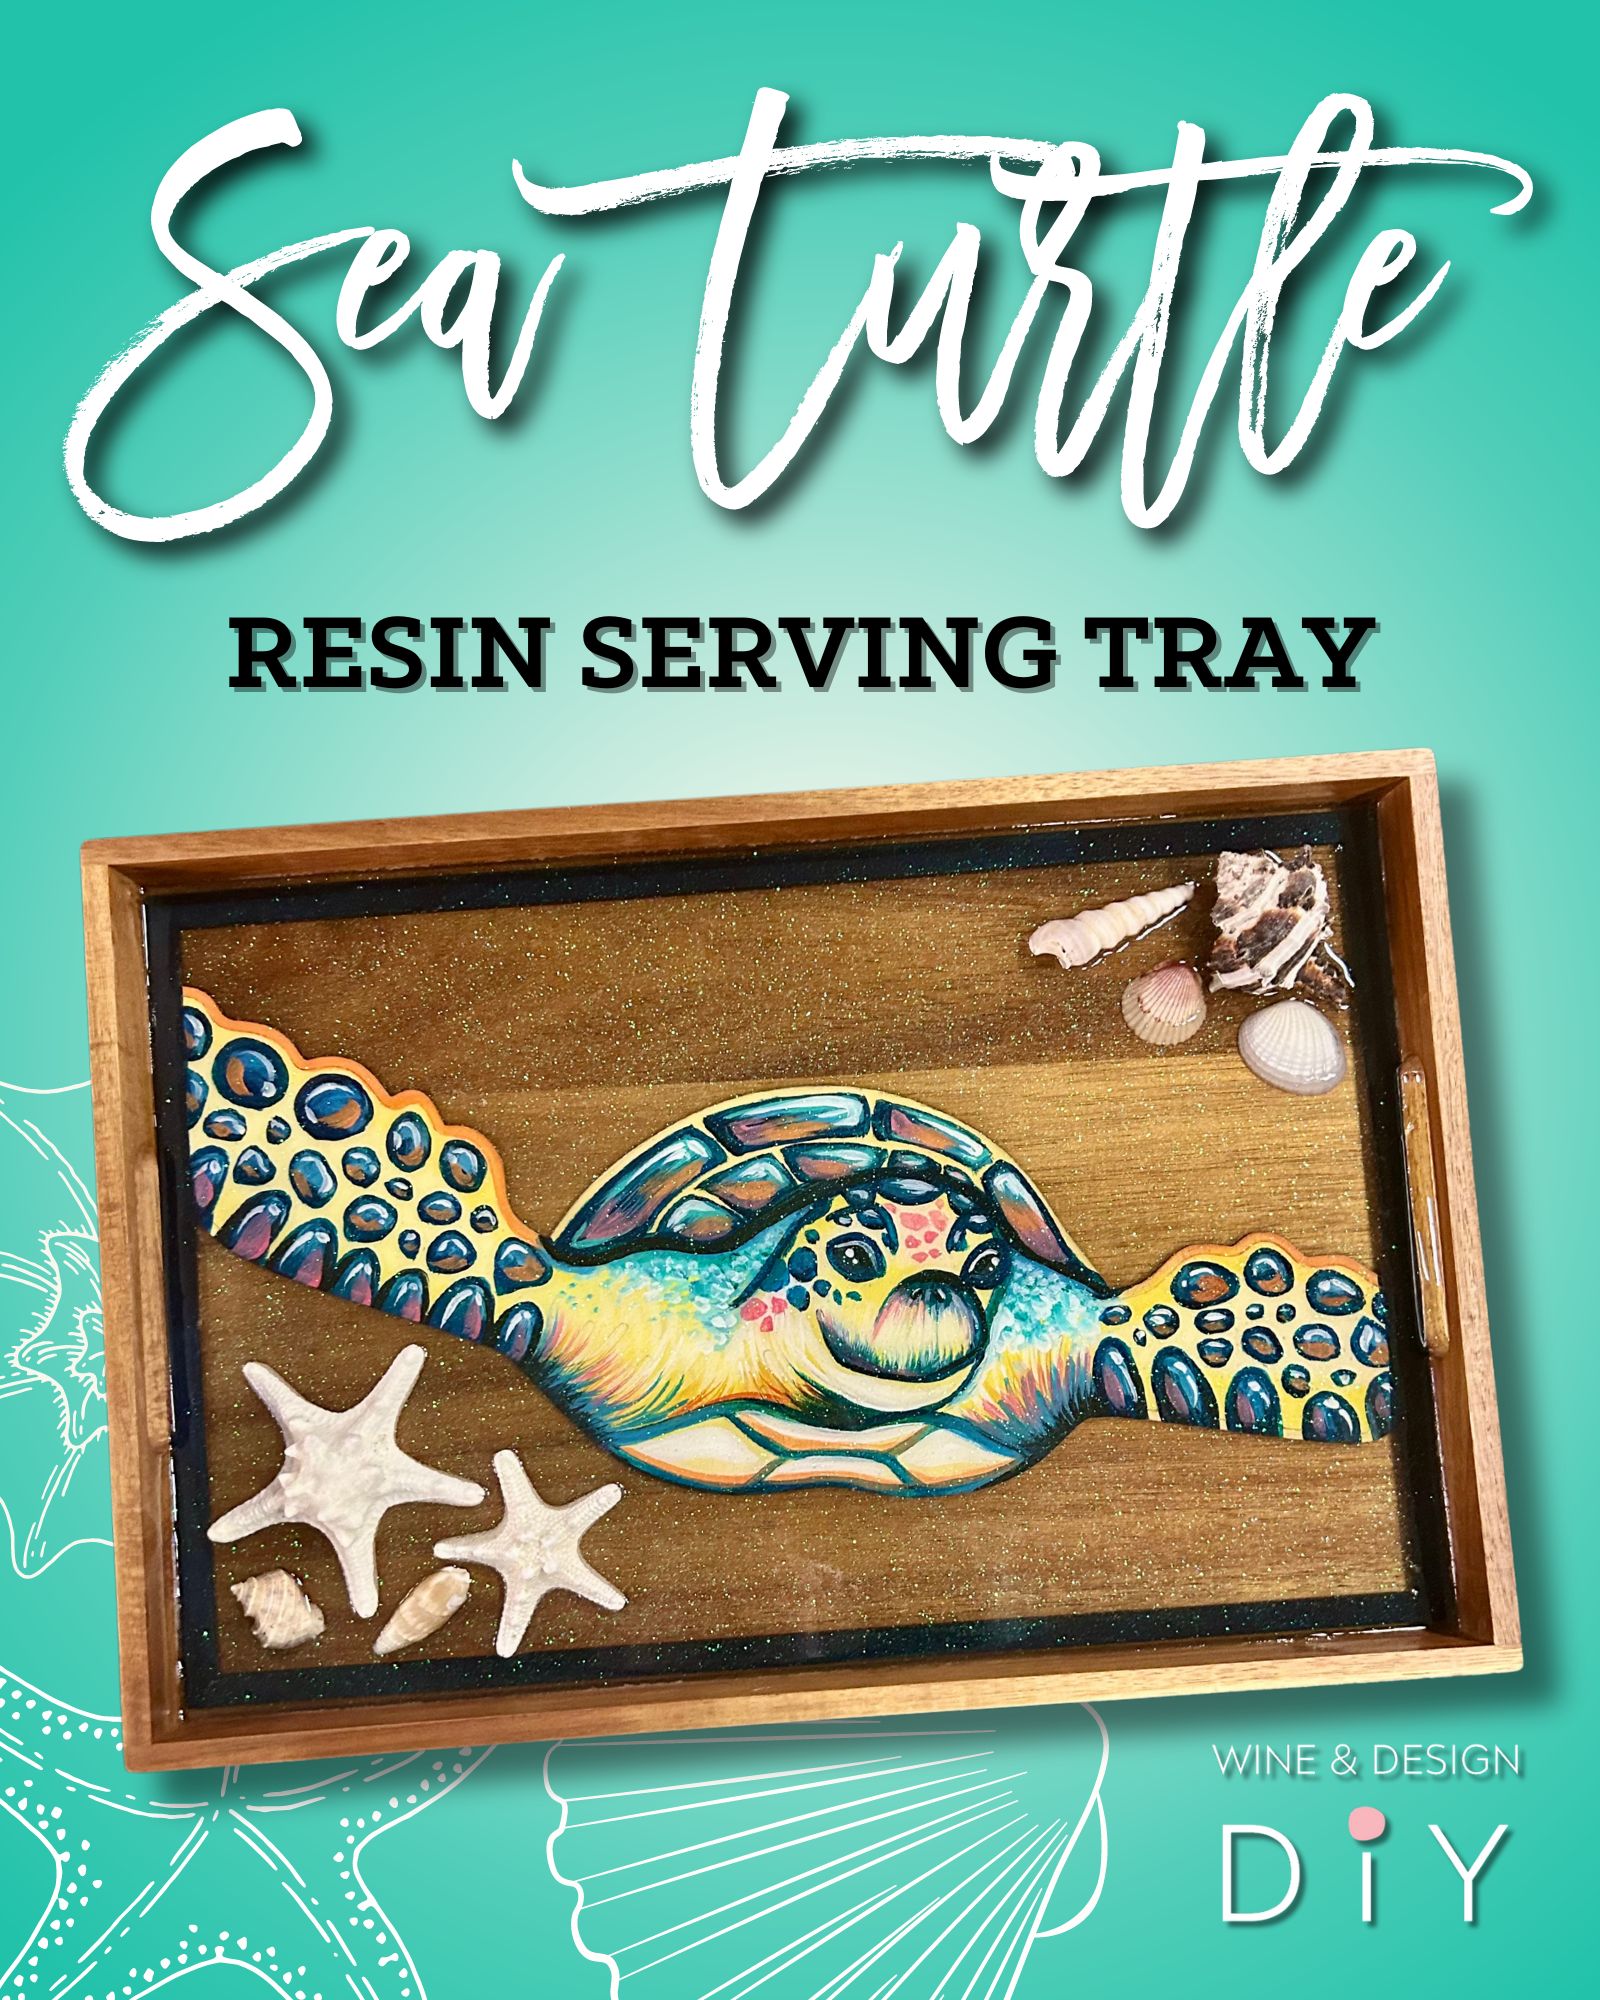 DIY | Resin Workshop - Sea Turtle Serving Tray